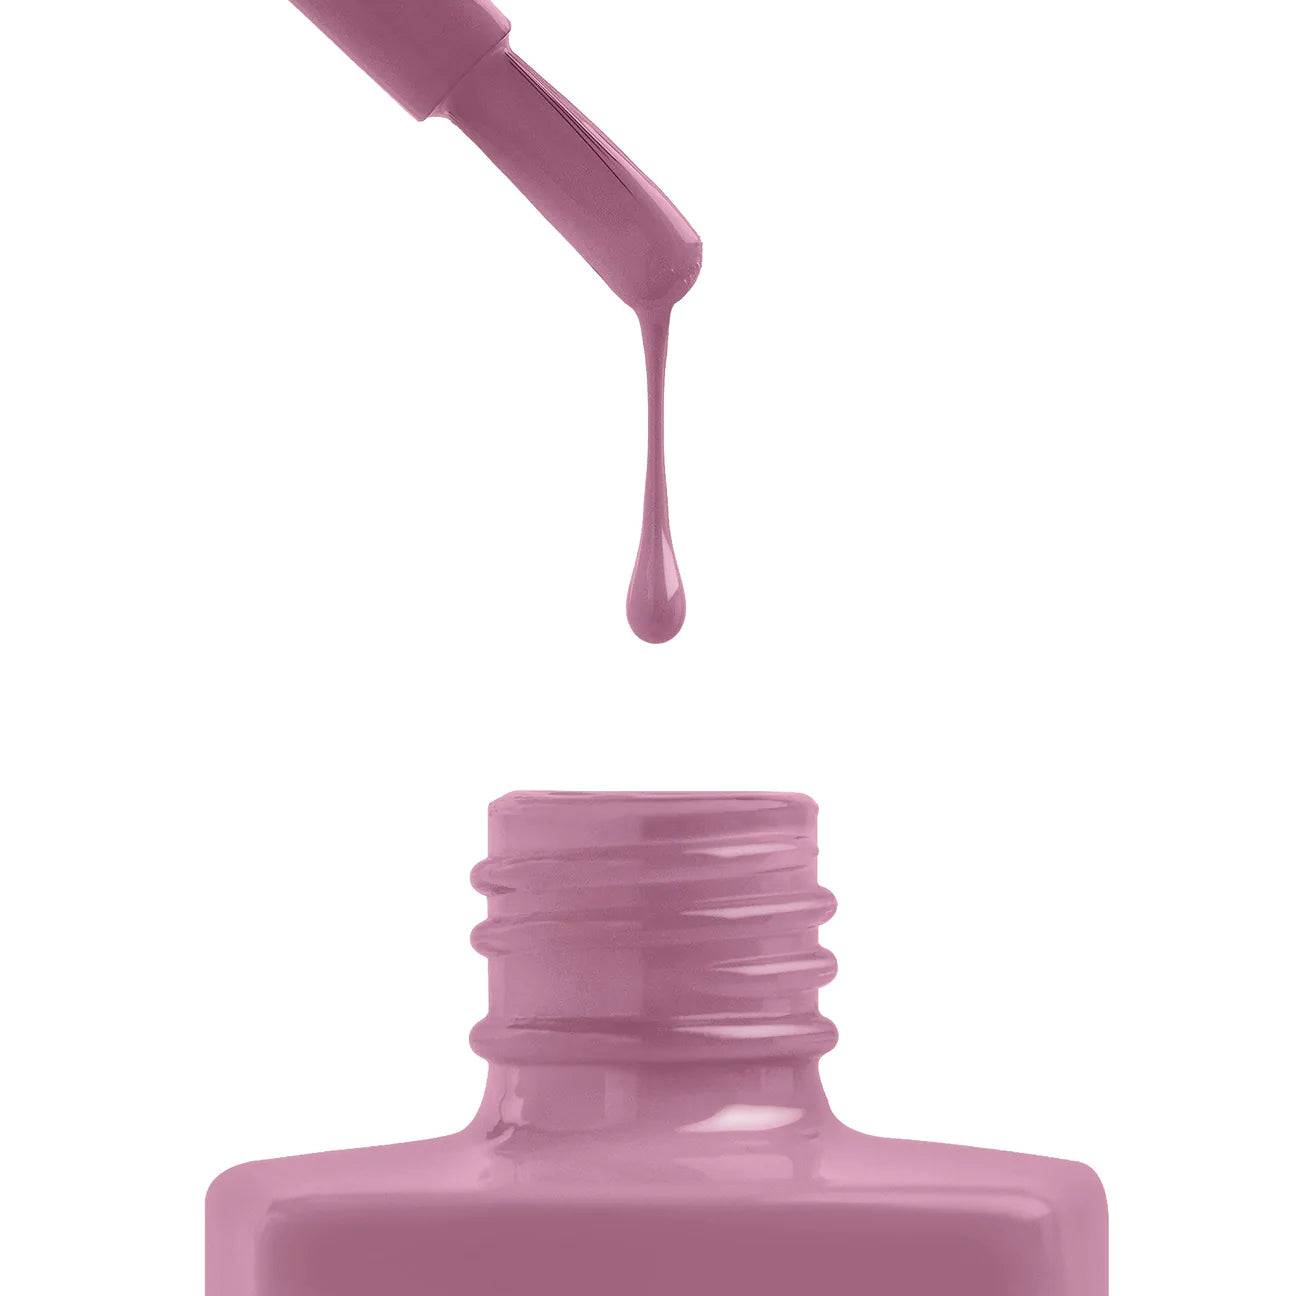 Aprés Gel Color Polish Dusty Lilac -289 - Universal Nail Supplies